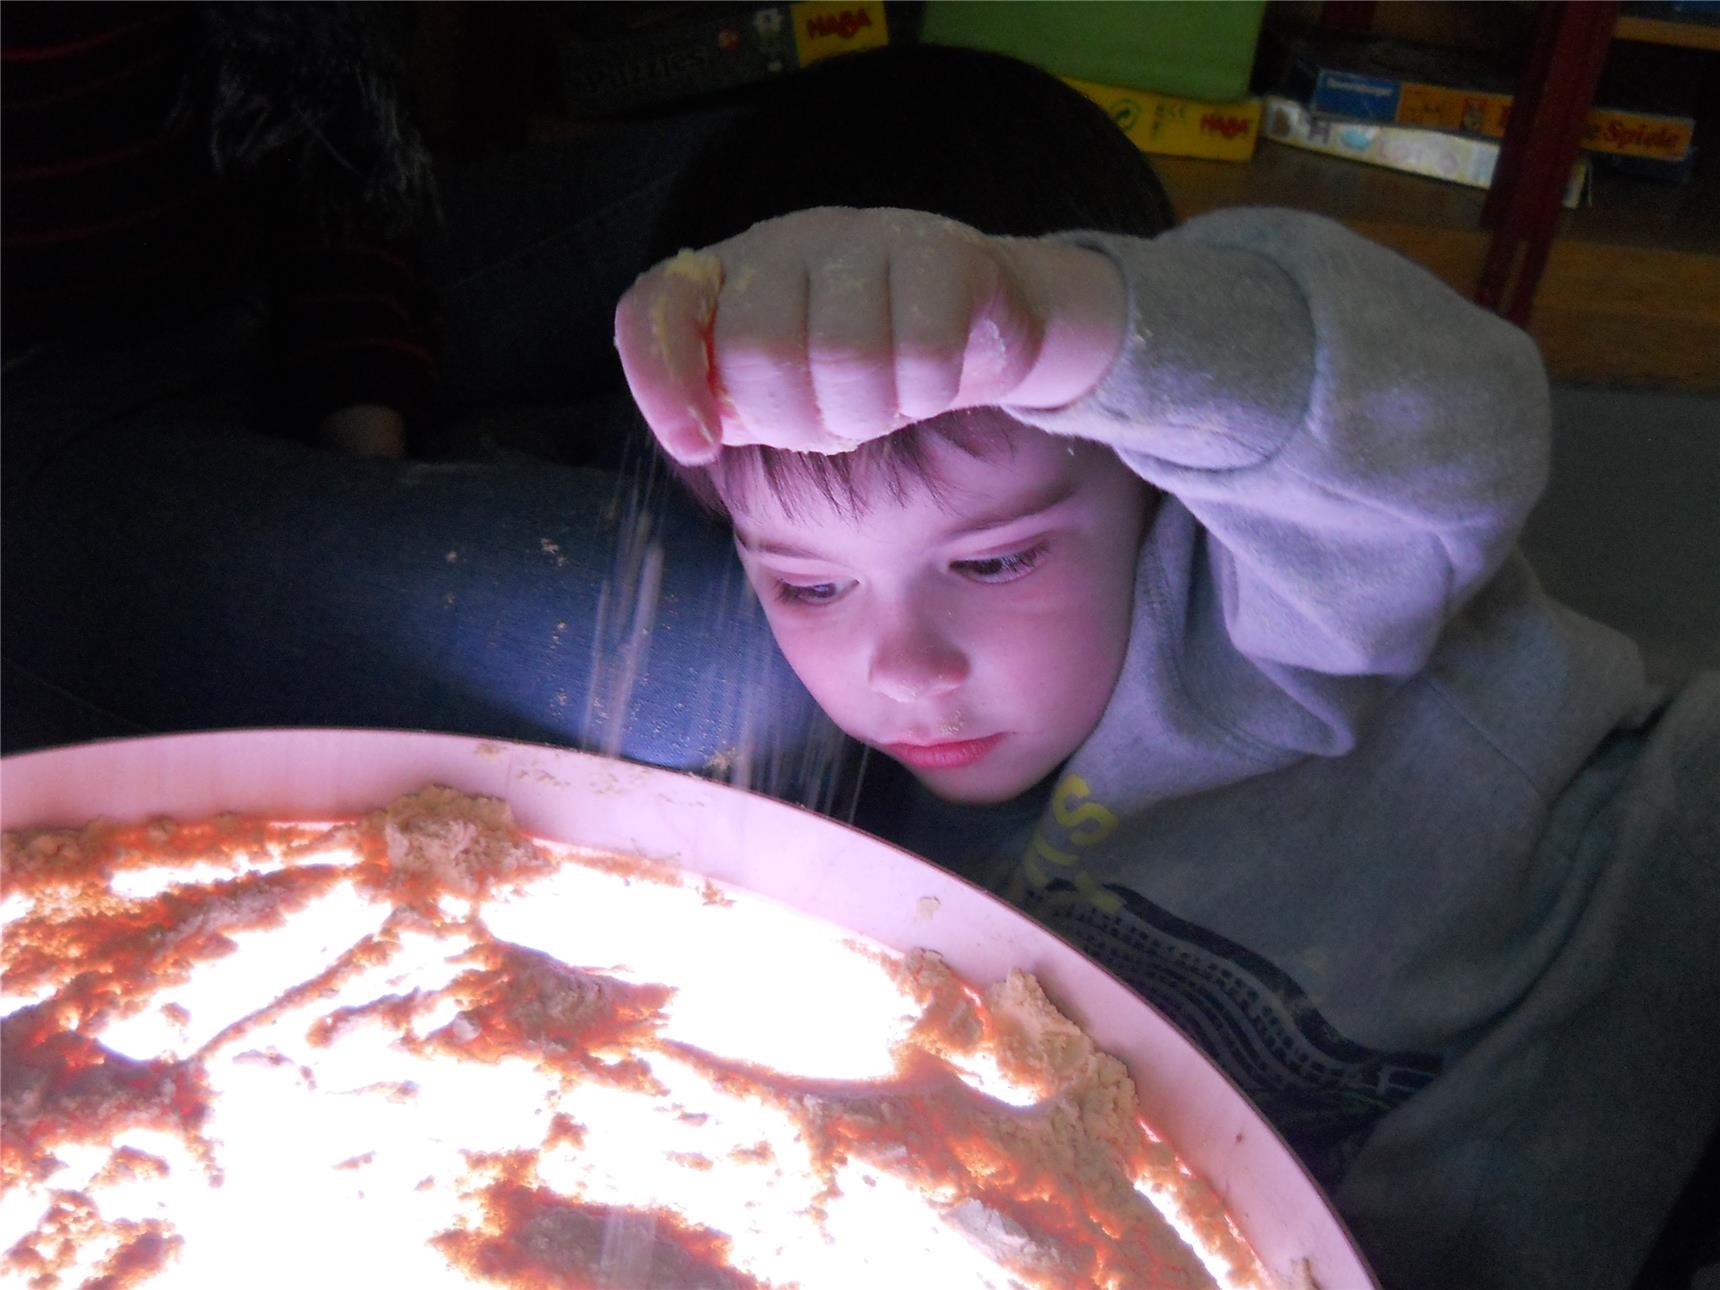 : Ein Kind schaut auf die von unten beleuchtete durchscheinende Platte eines Tischs, auf der Maismehl verteilt ist (Caritasverband Trier e.V.)